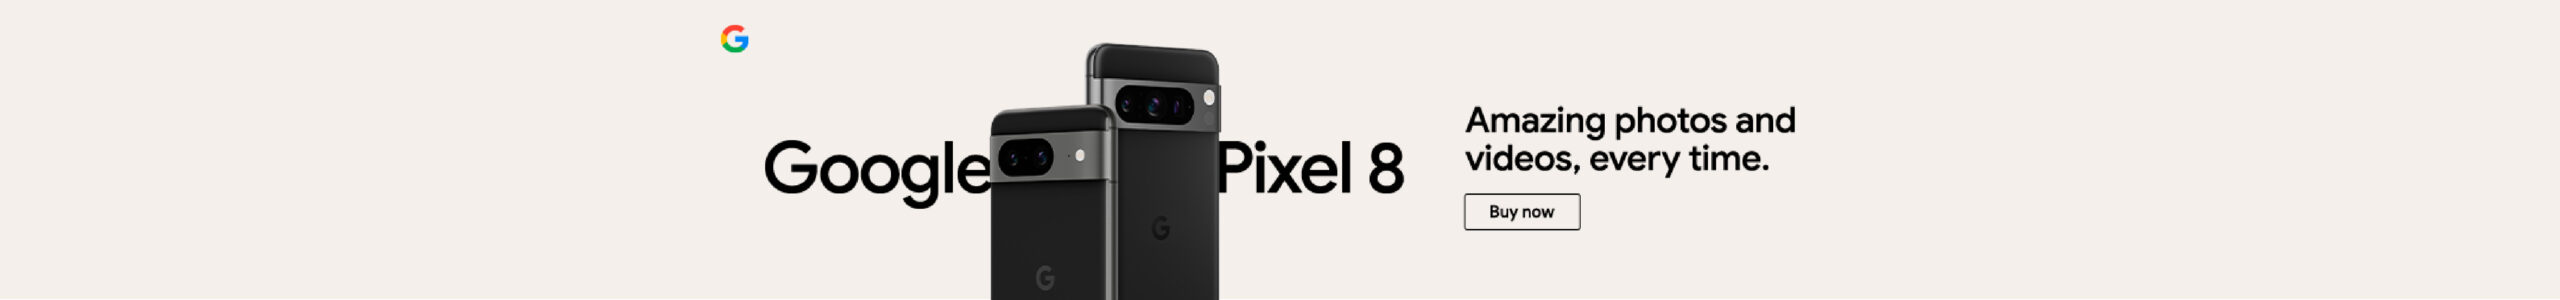 Google-Pixel-8-Banner-Desktop